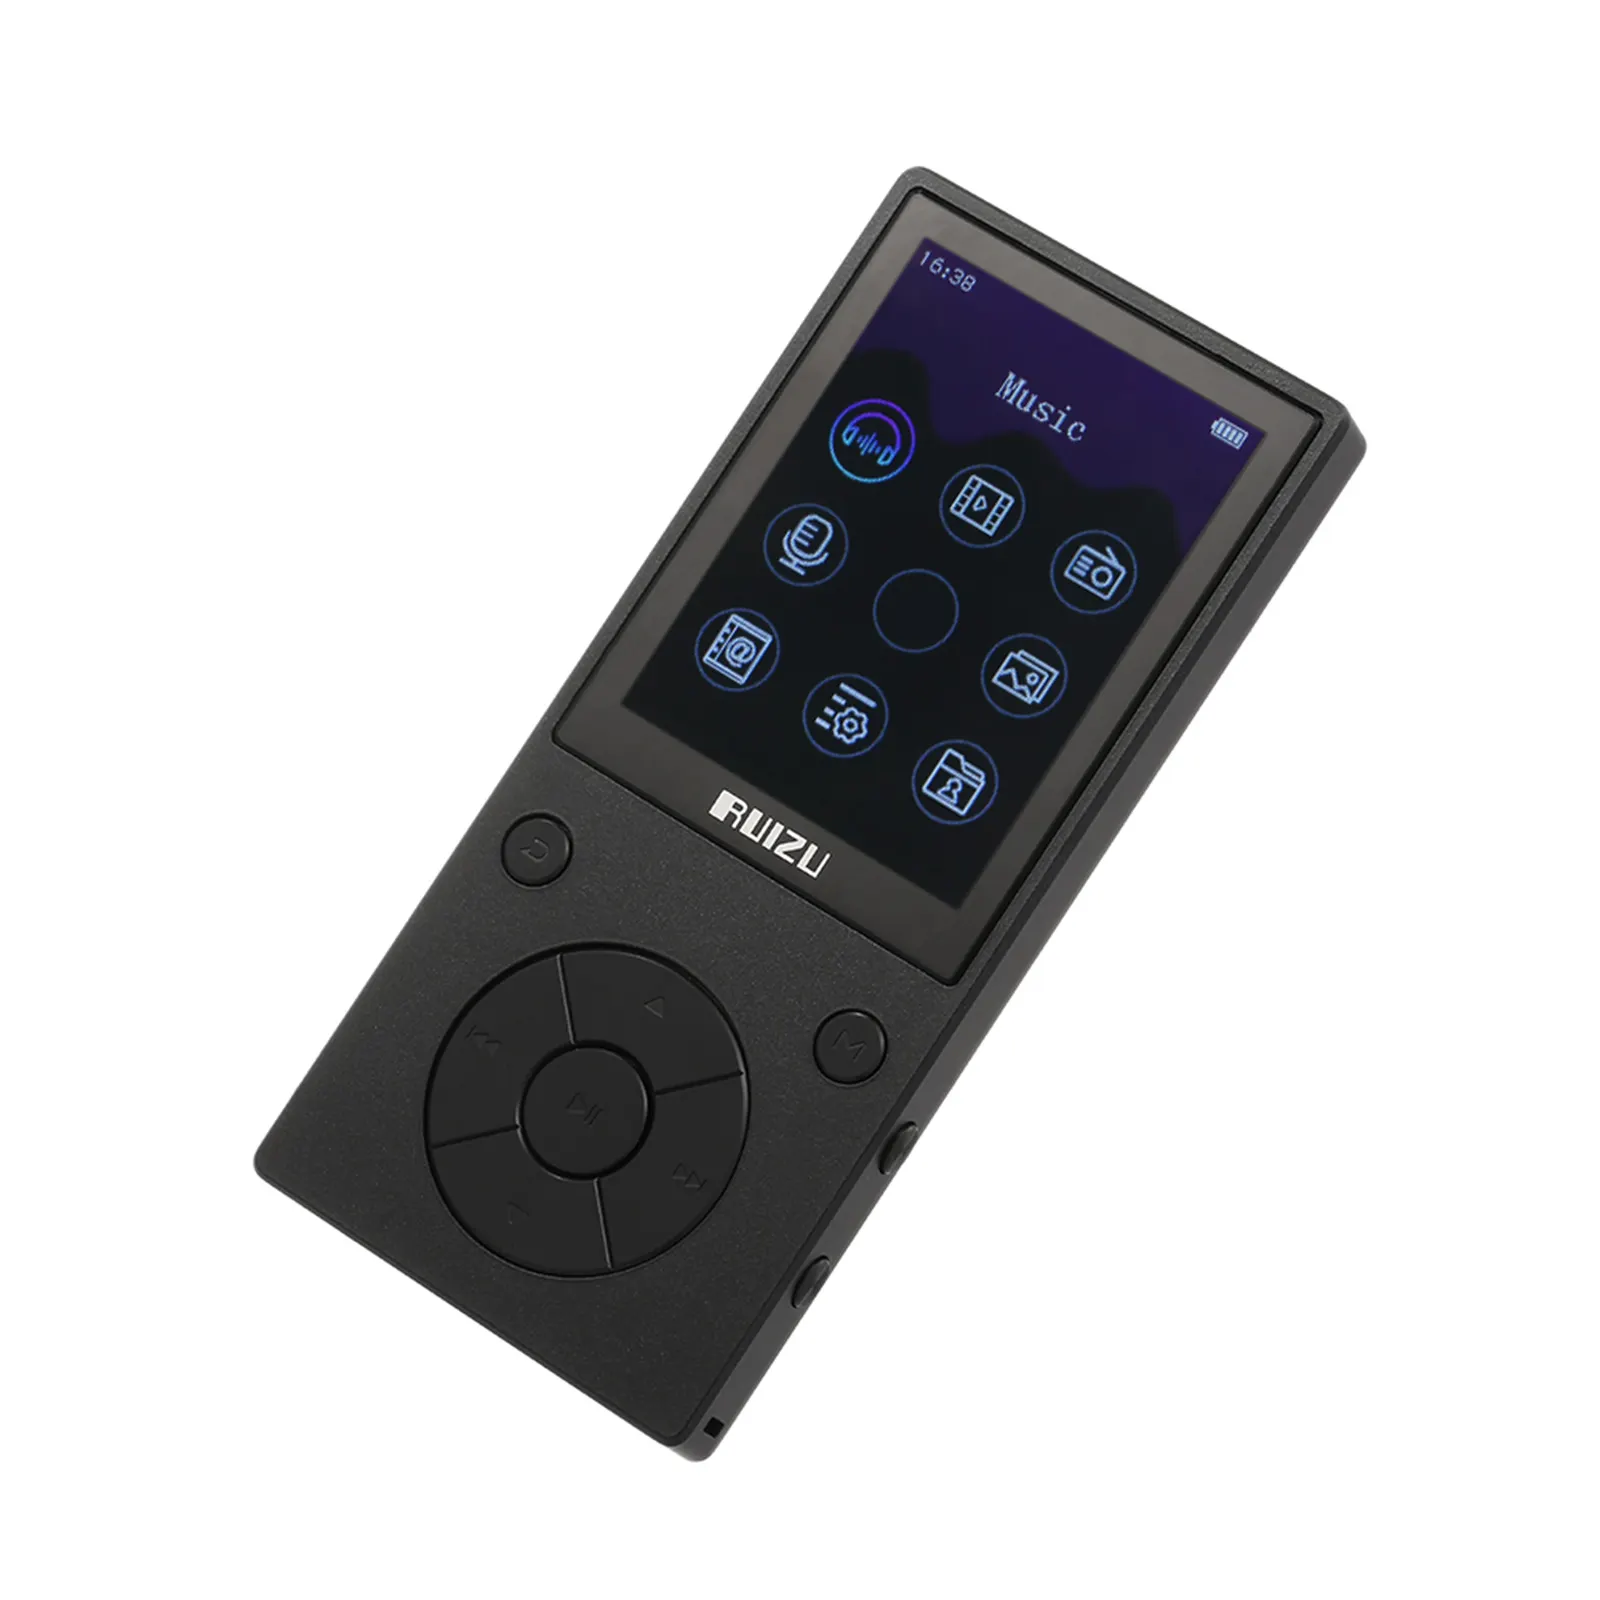 D11-reproductor de música MP3 y MP4, 8GB, BT, Radio FM, grabadora de voz, ranura para tarjeta TF, auriculares de 3,5mm, micrófono incorporado, altavoz, soporte para cronómetro